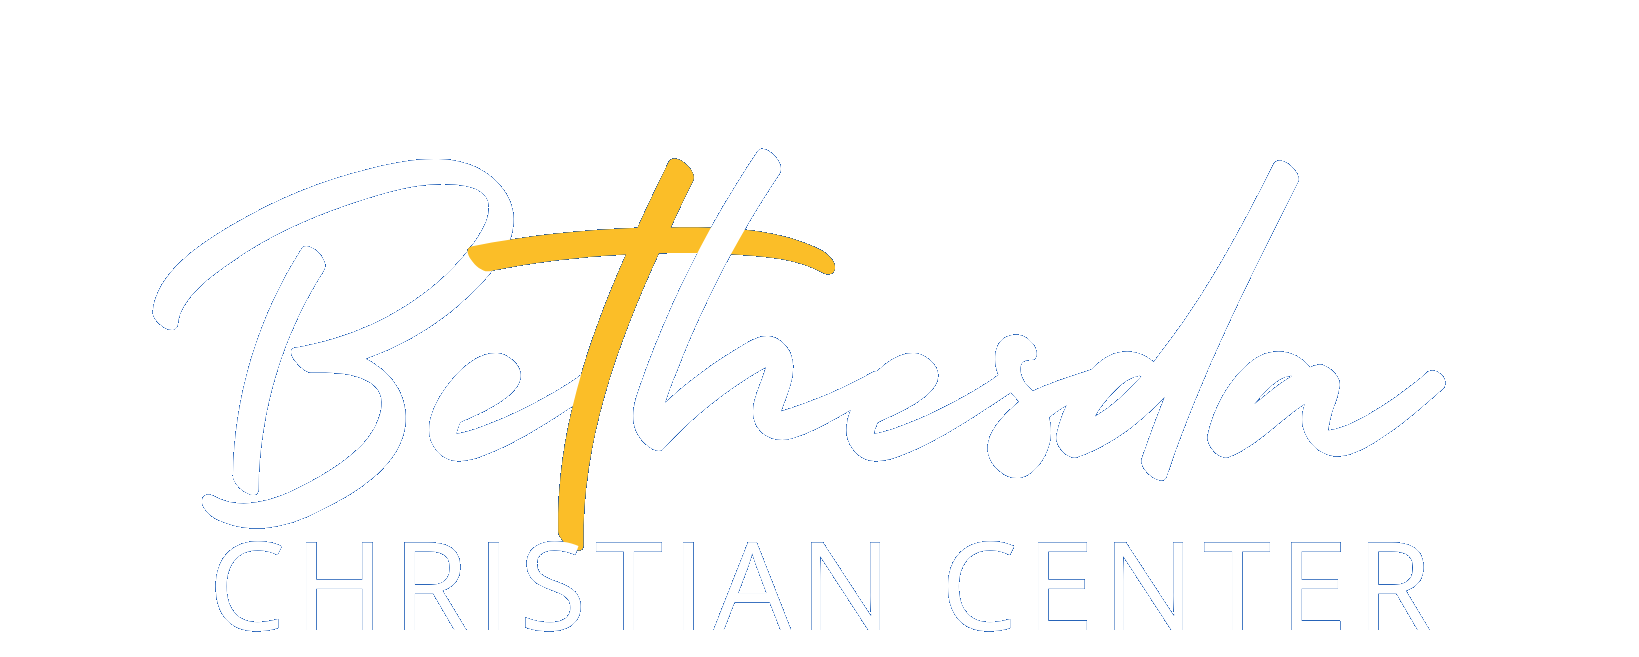 Bethesda Christian Center